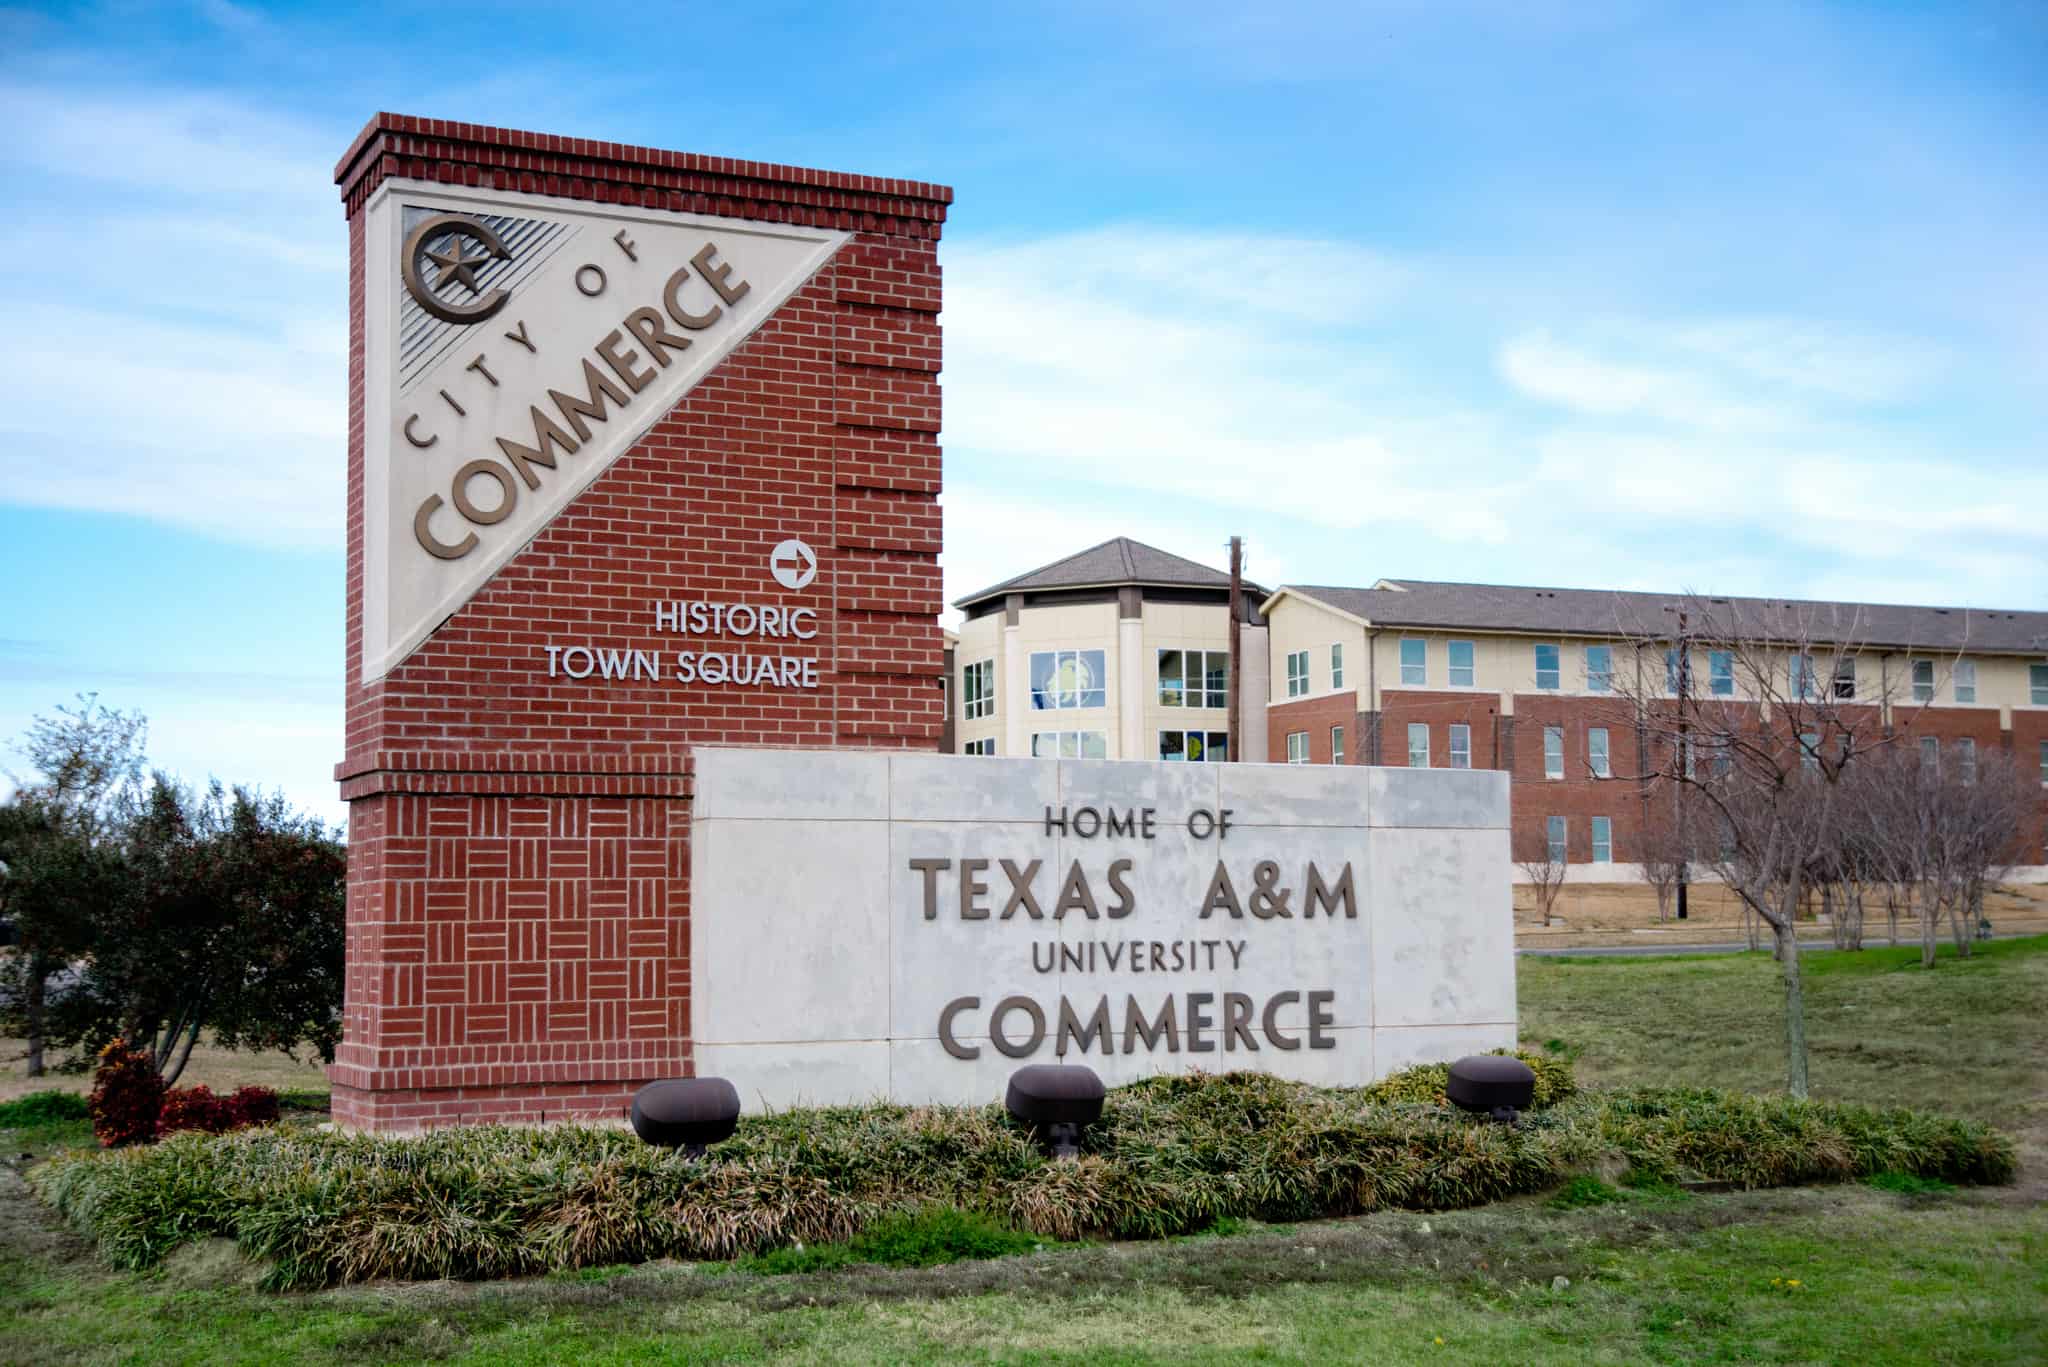 Aandm Commerce Named A Fastest Growing College Texas Aandm University